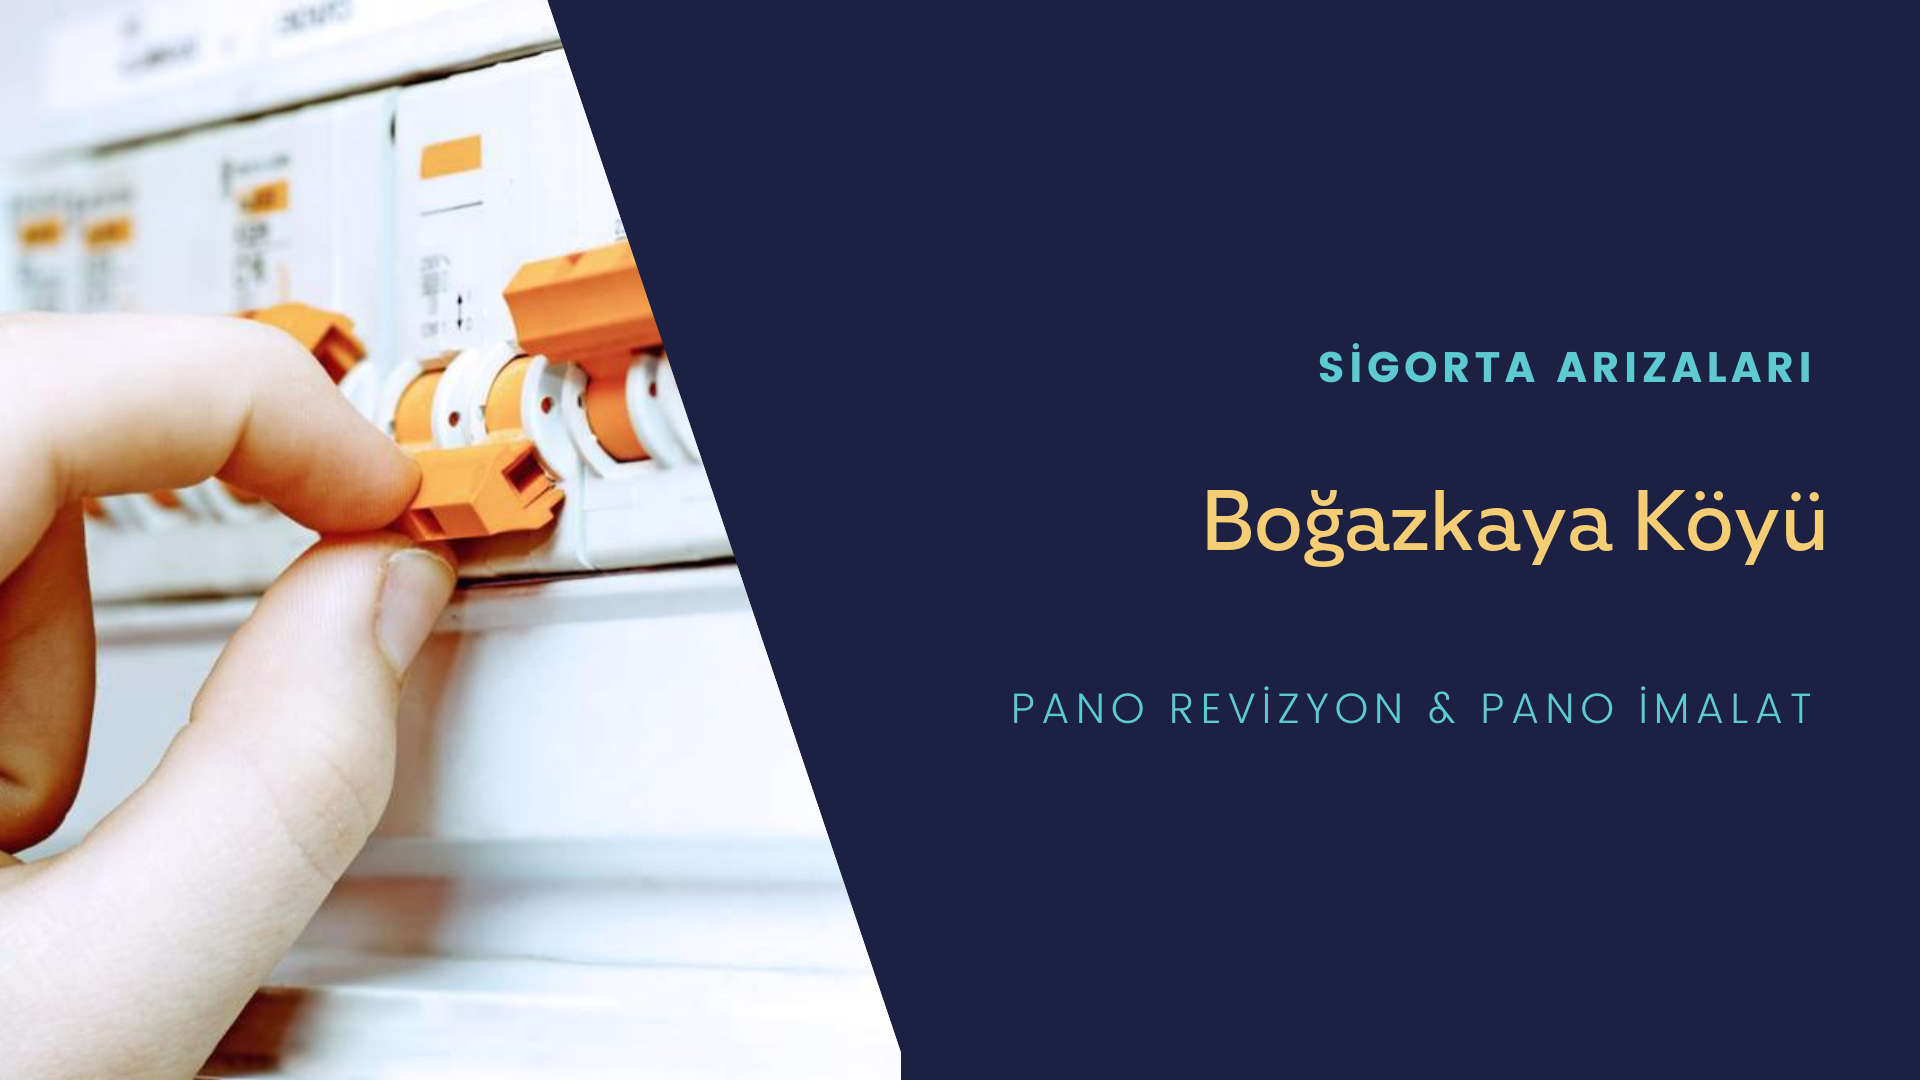 Boğazkaya Köyü Sigorta Arızaları İçin Profesyonel Elektrikçi ustalarımızı dilediğiniz zaman arayabilir talepte bulunabilirsiniz.